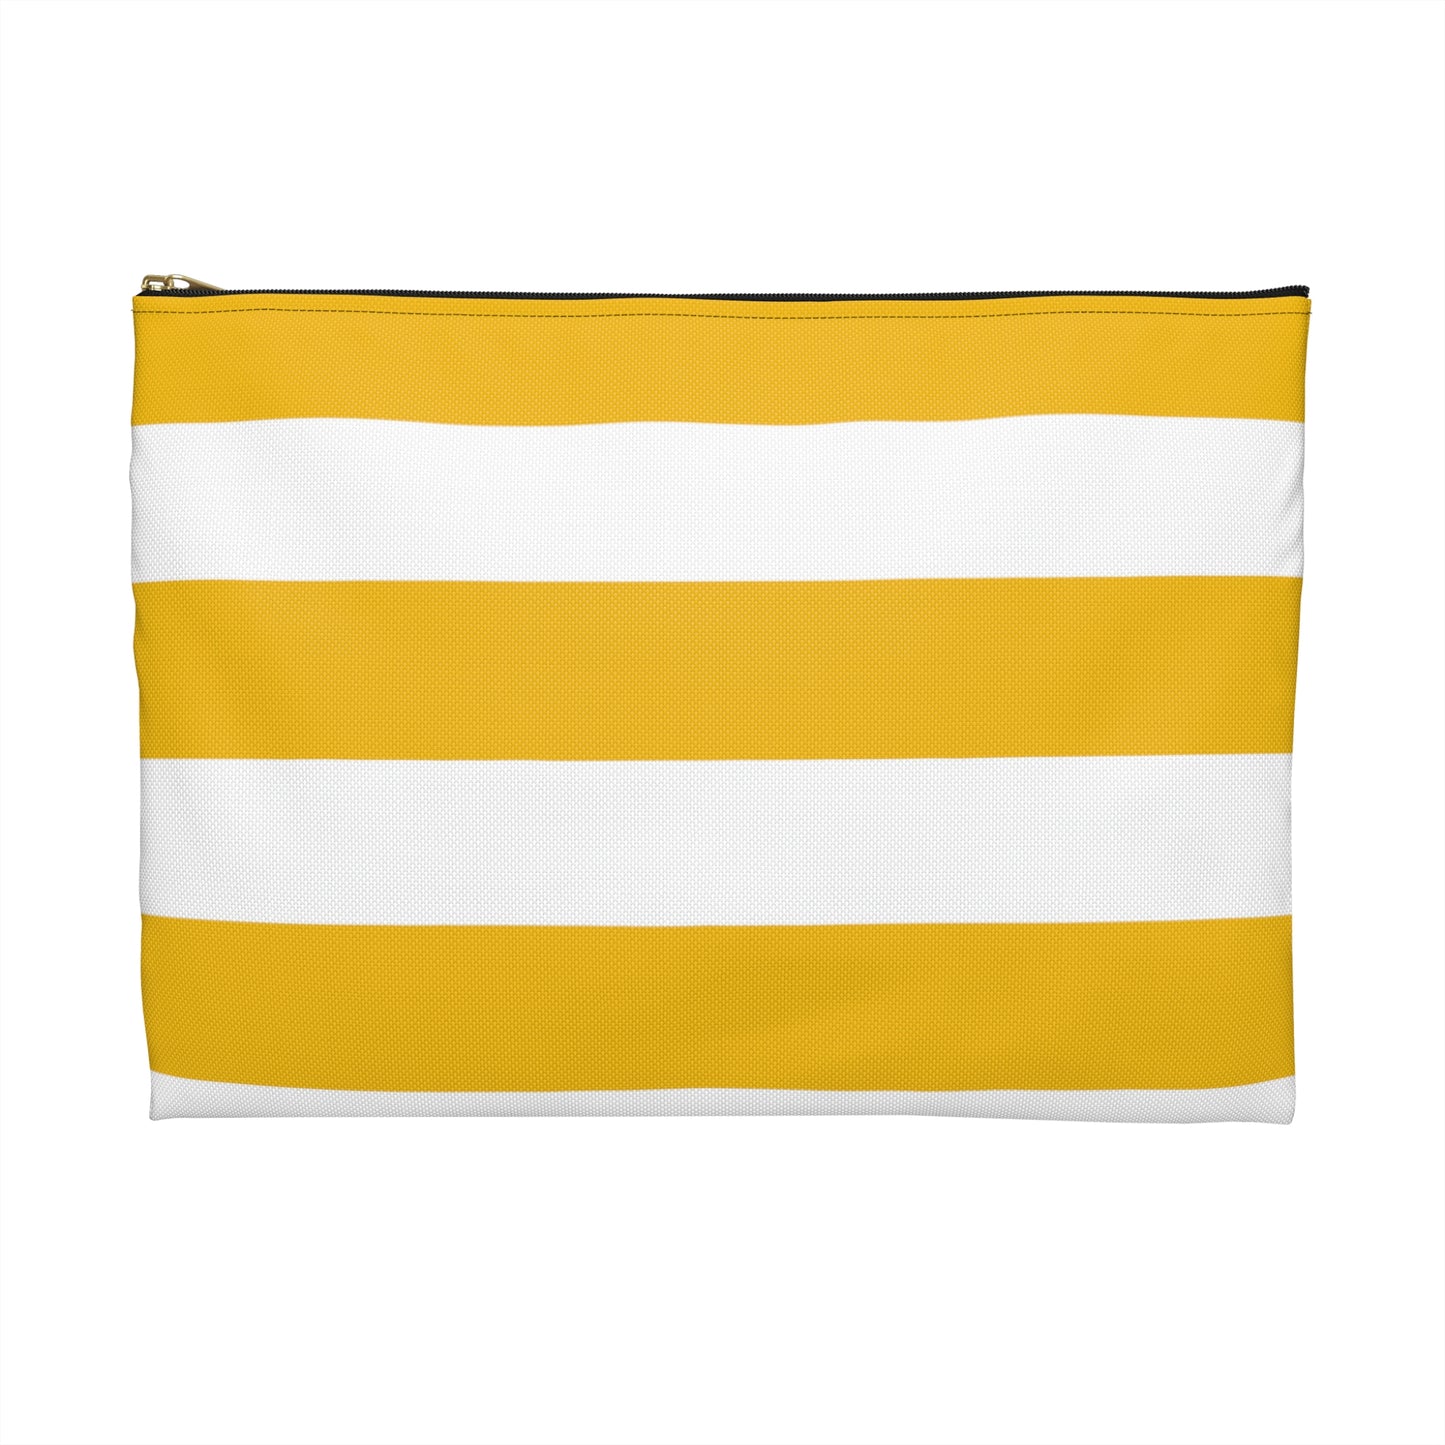 Flat Zipper Pouch - Lemon Yellow/White Stripes